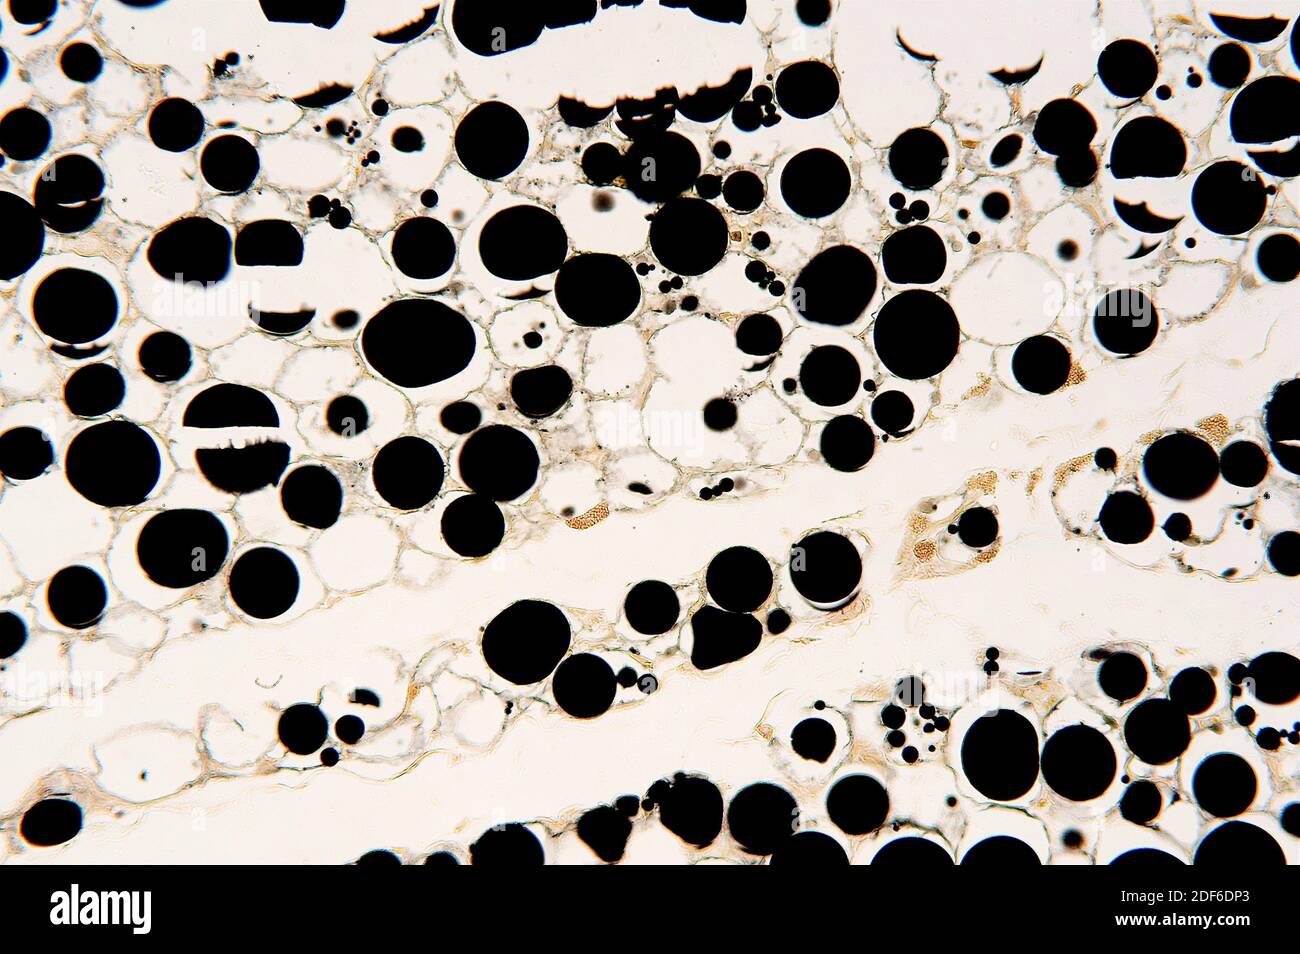 Tissu adipeux avec adipocite, lipides stockés et noyau. Microscope optique, grossissement X100. Banque D'Images